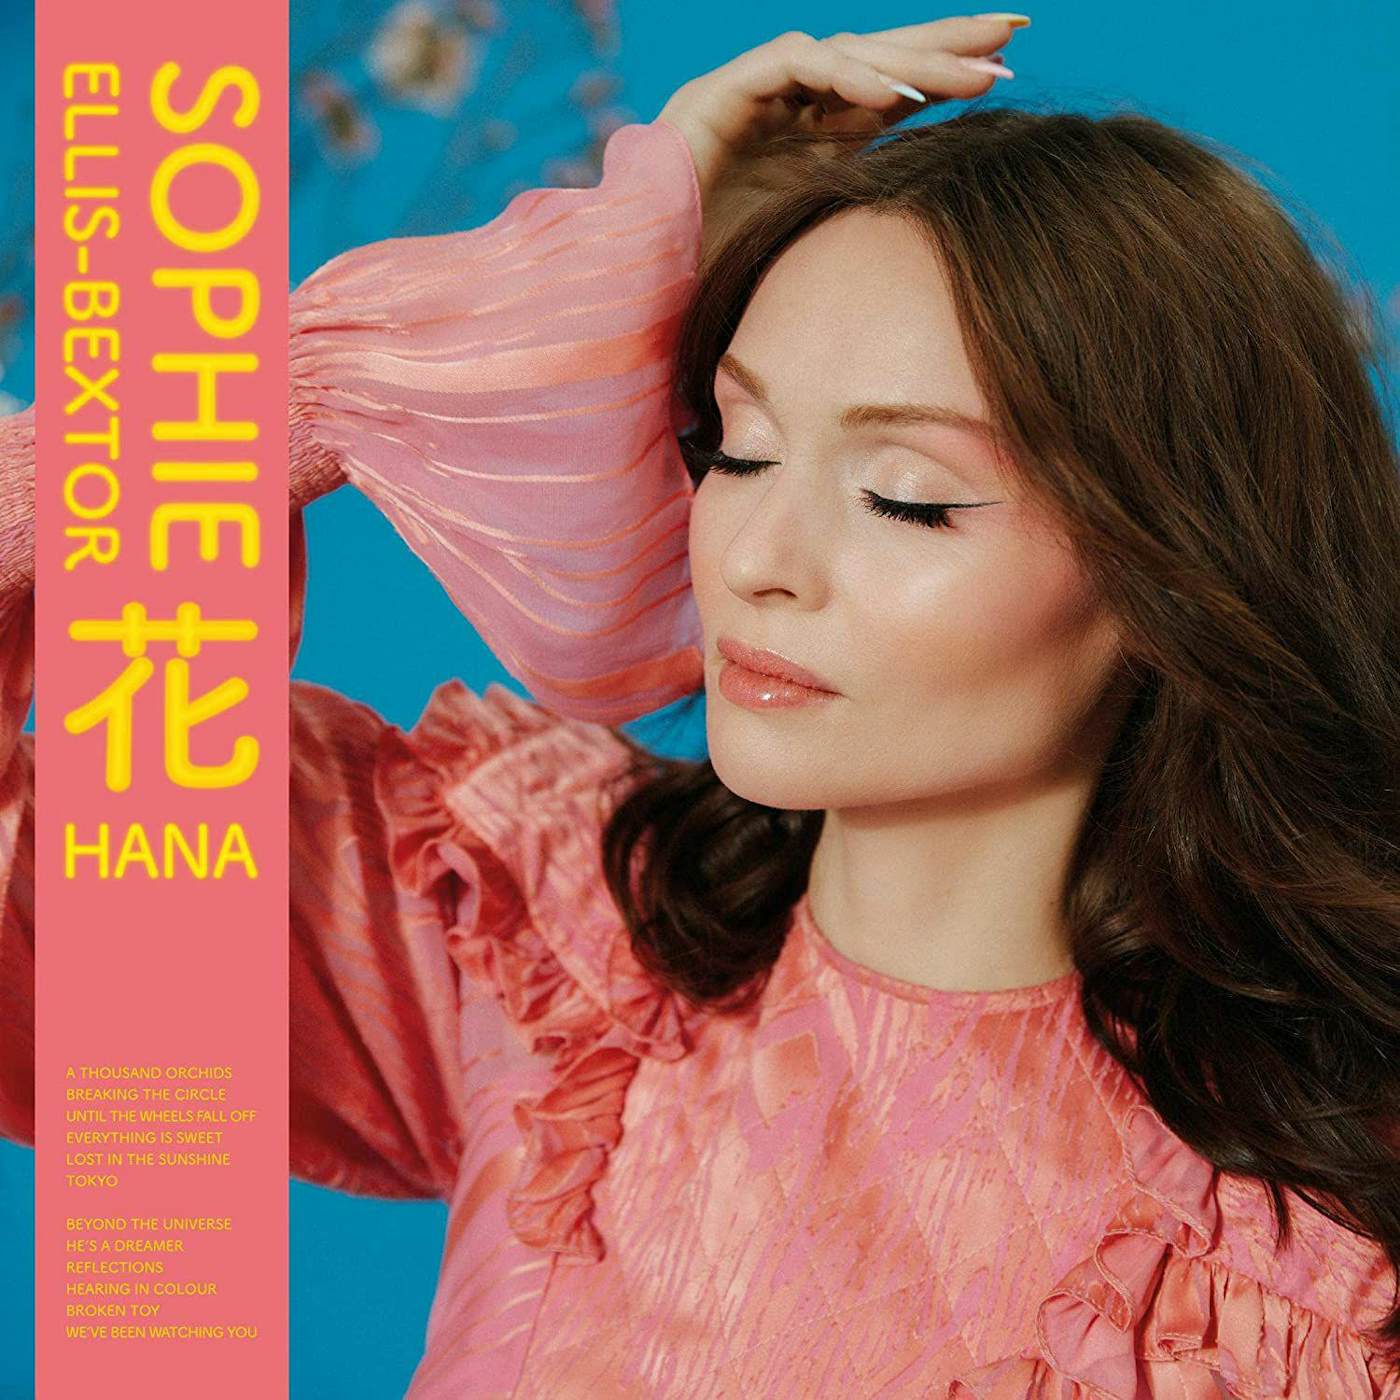 Sophie Ellis-Bextor HANA CD